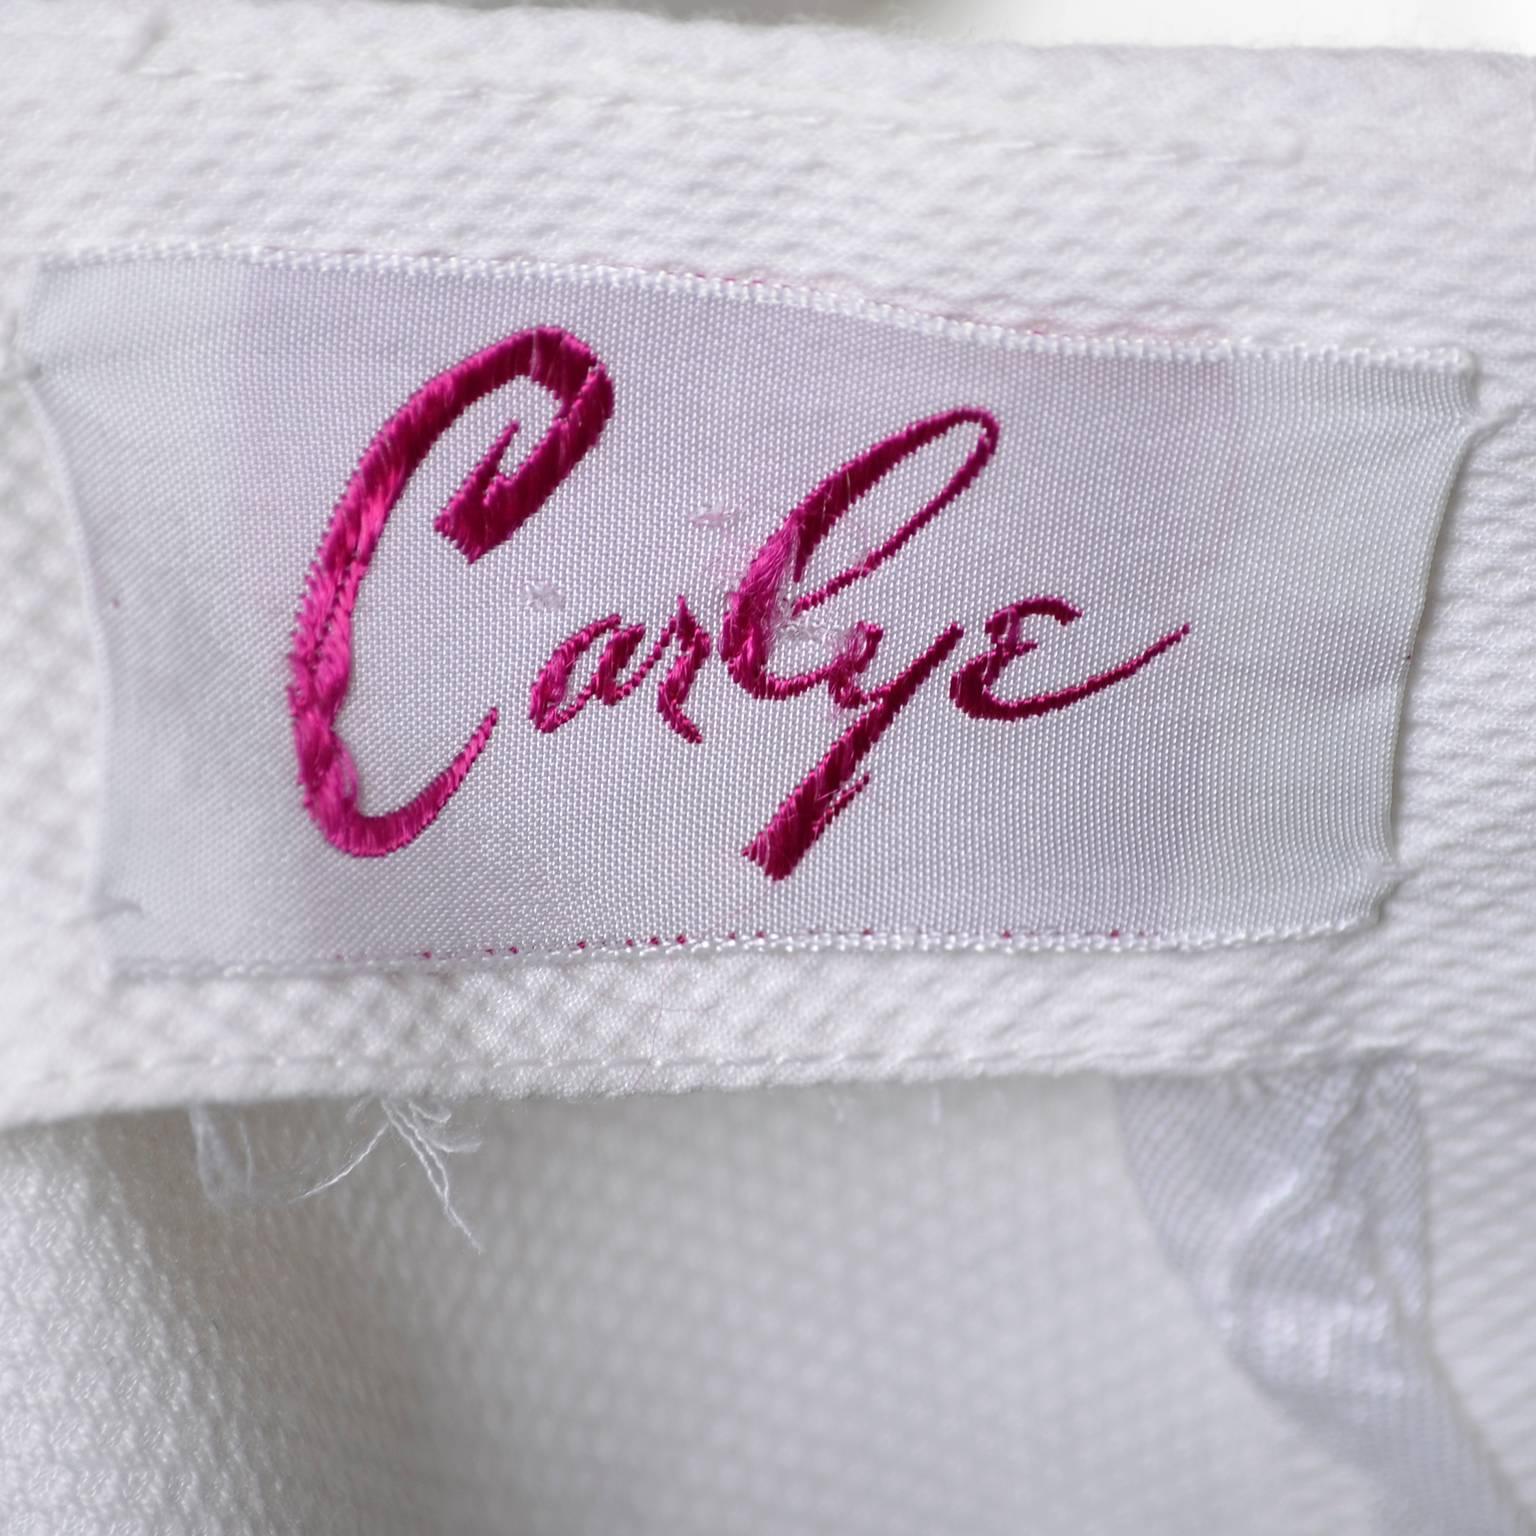 Women's Carlye White Pique Vintage Dress 2pc Lace Mesh Peek a Boo Peplum Bodice XS For Sale